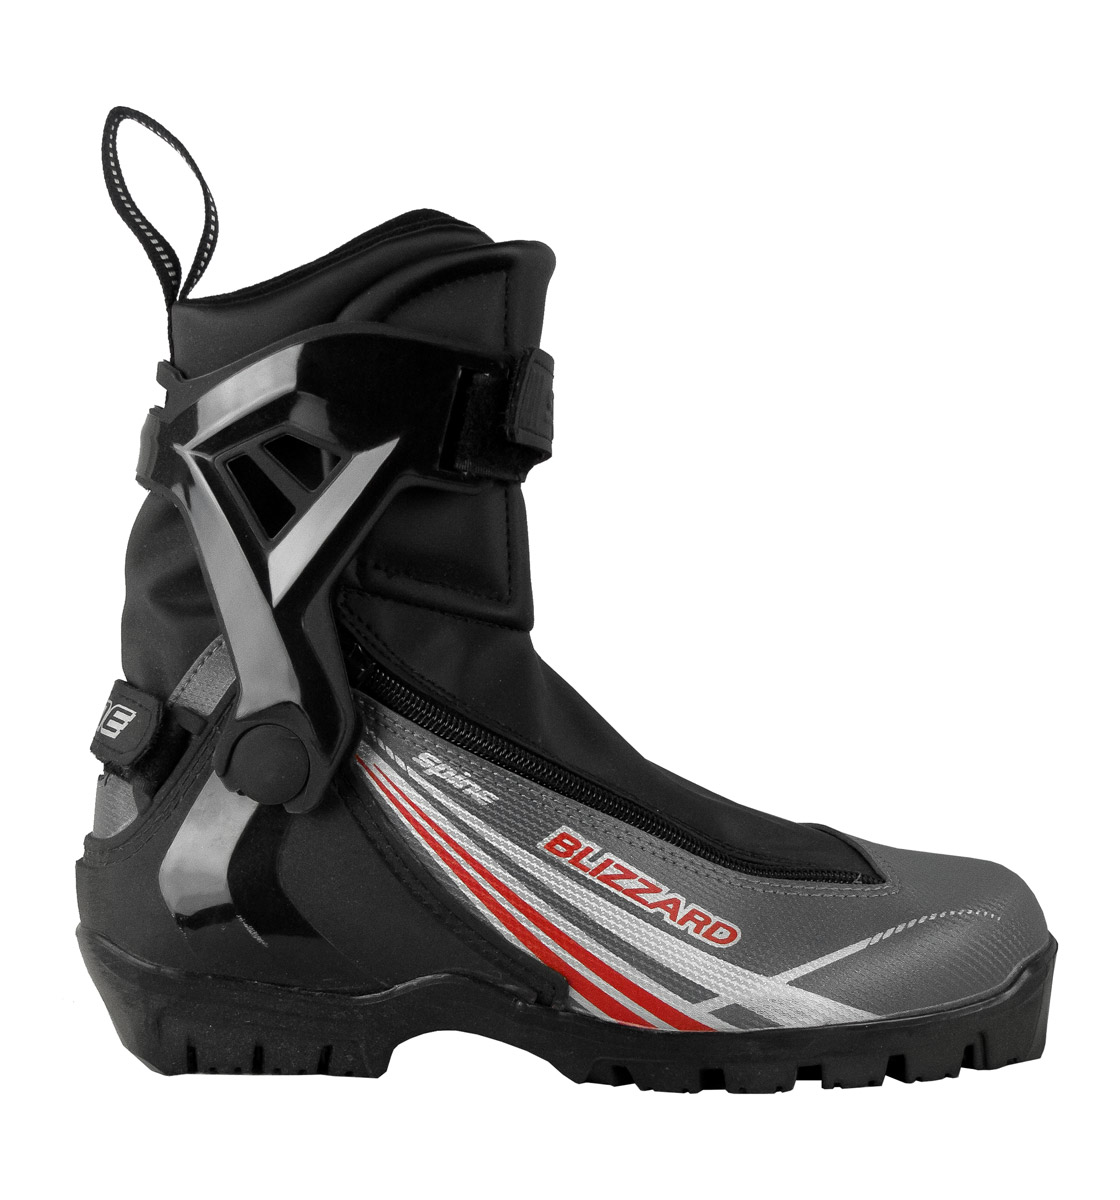 Ботинки спайн купить. Лыжные ботинки Spine Blizzard. Лыжные ботинки спайн близард. Ботинки для беговых лыж Spine Kids Velcro 104. Finntrail Blizzard ботинки.